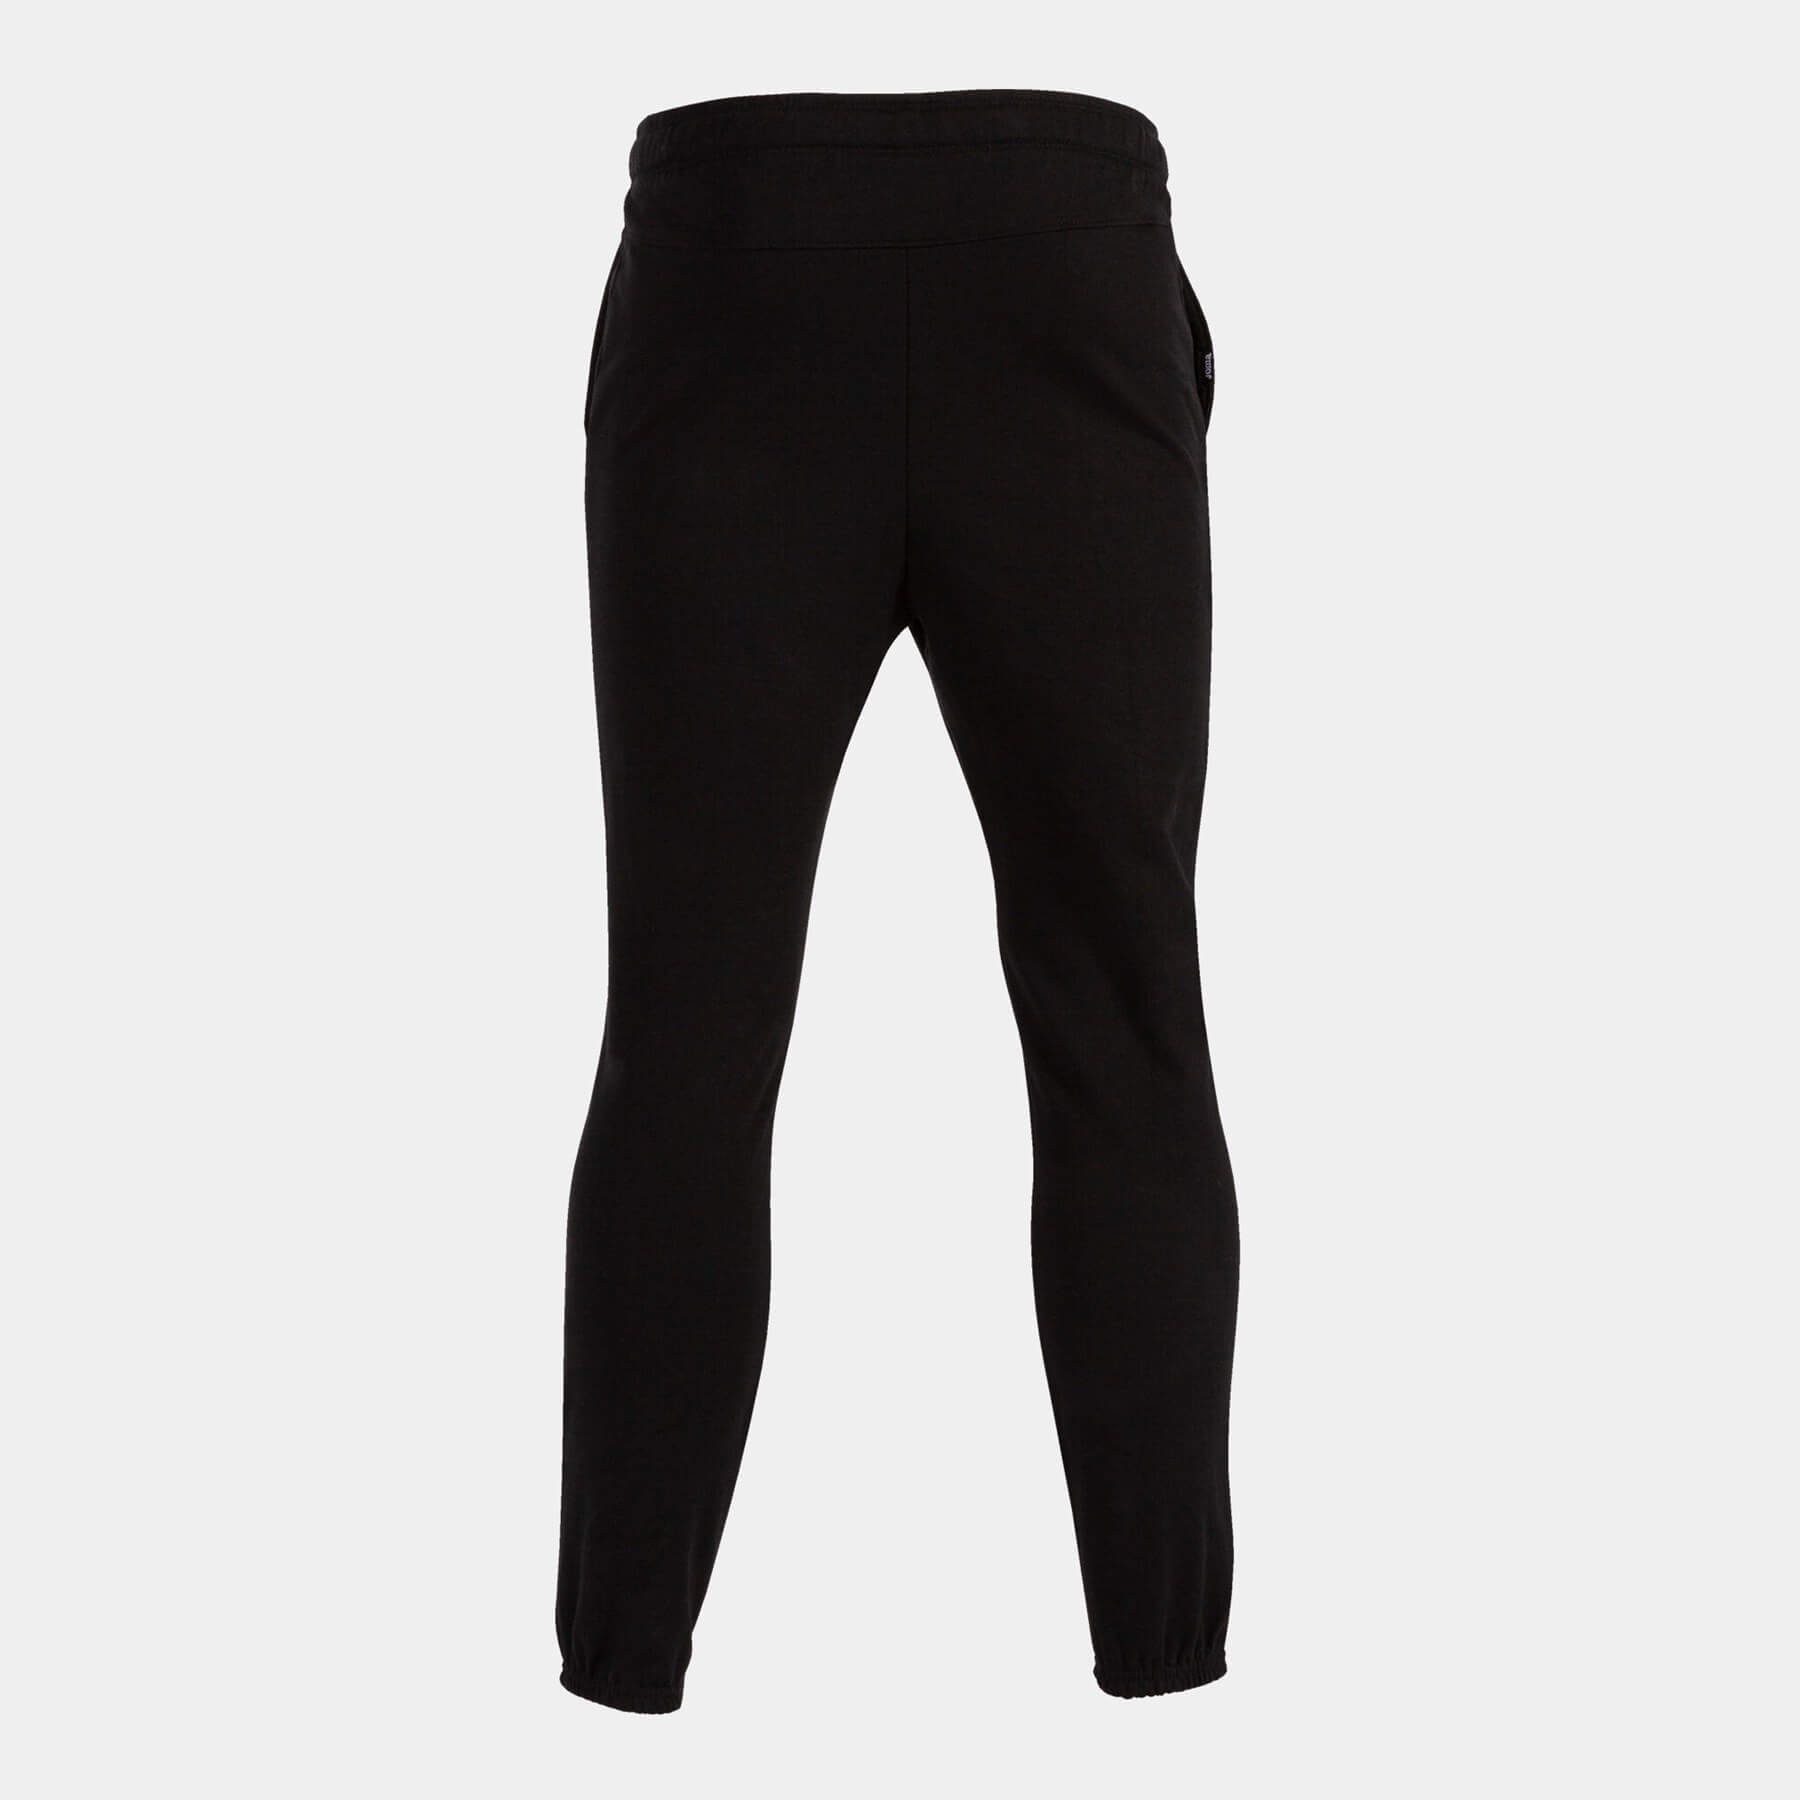  Joma Longs Pants Man Beta Erkek Siyah Pantolon 800049-100